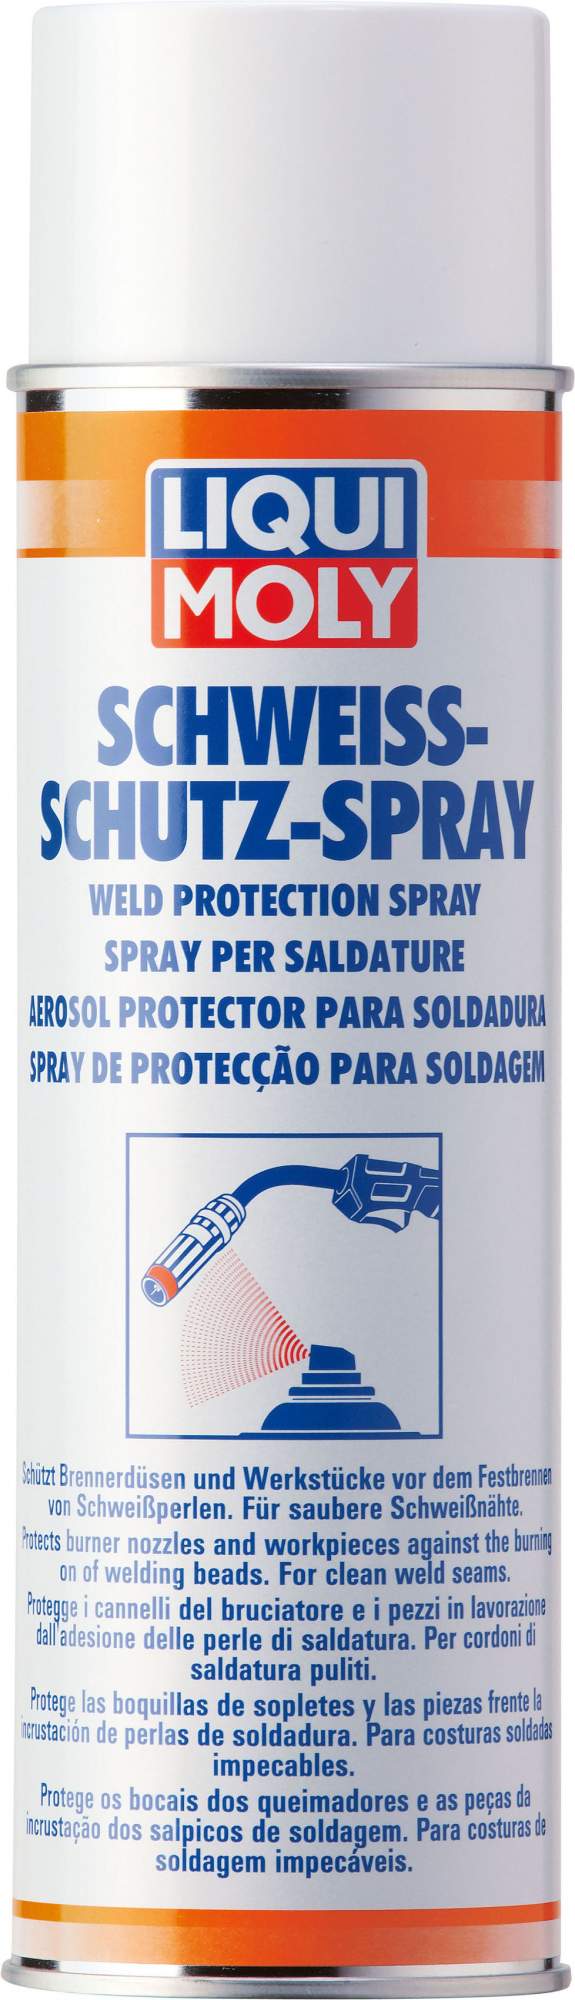 Спрей для защиты при свар.работах LIQUI MOLY Schweiss-Schutz-Spray 0,5 л